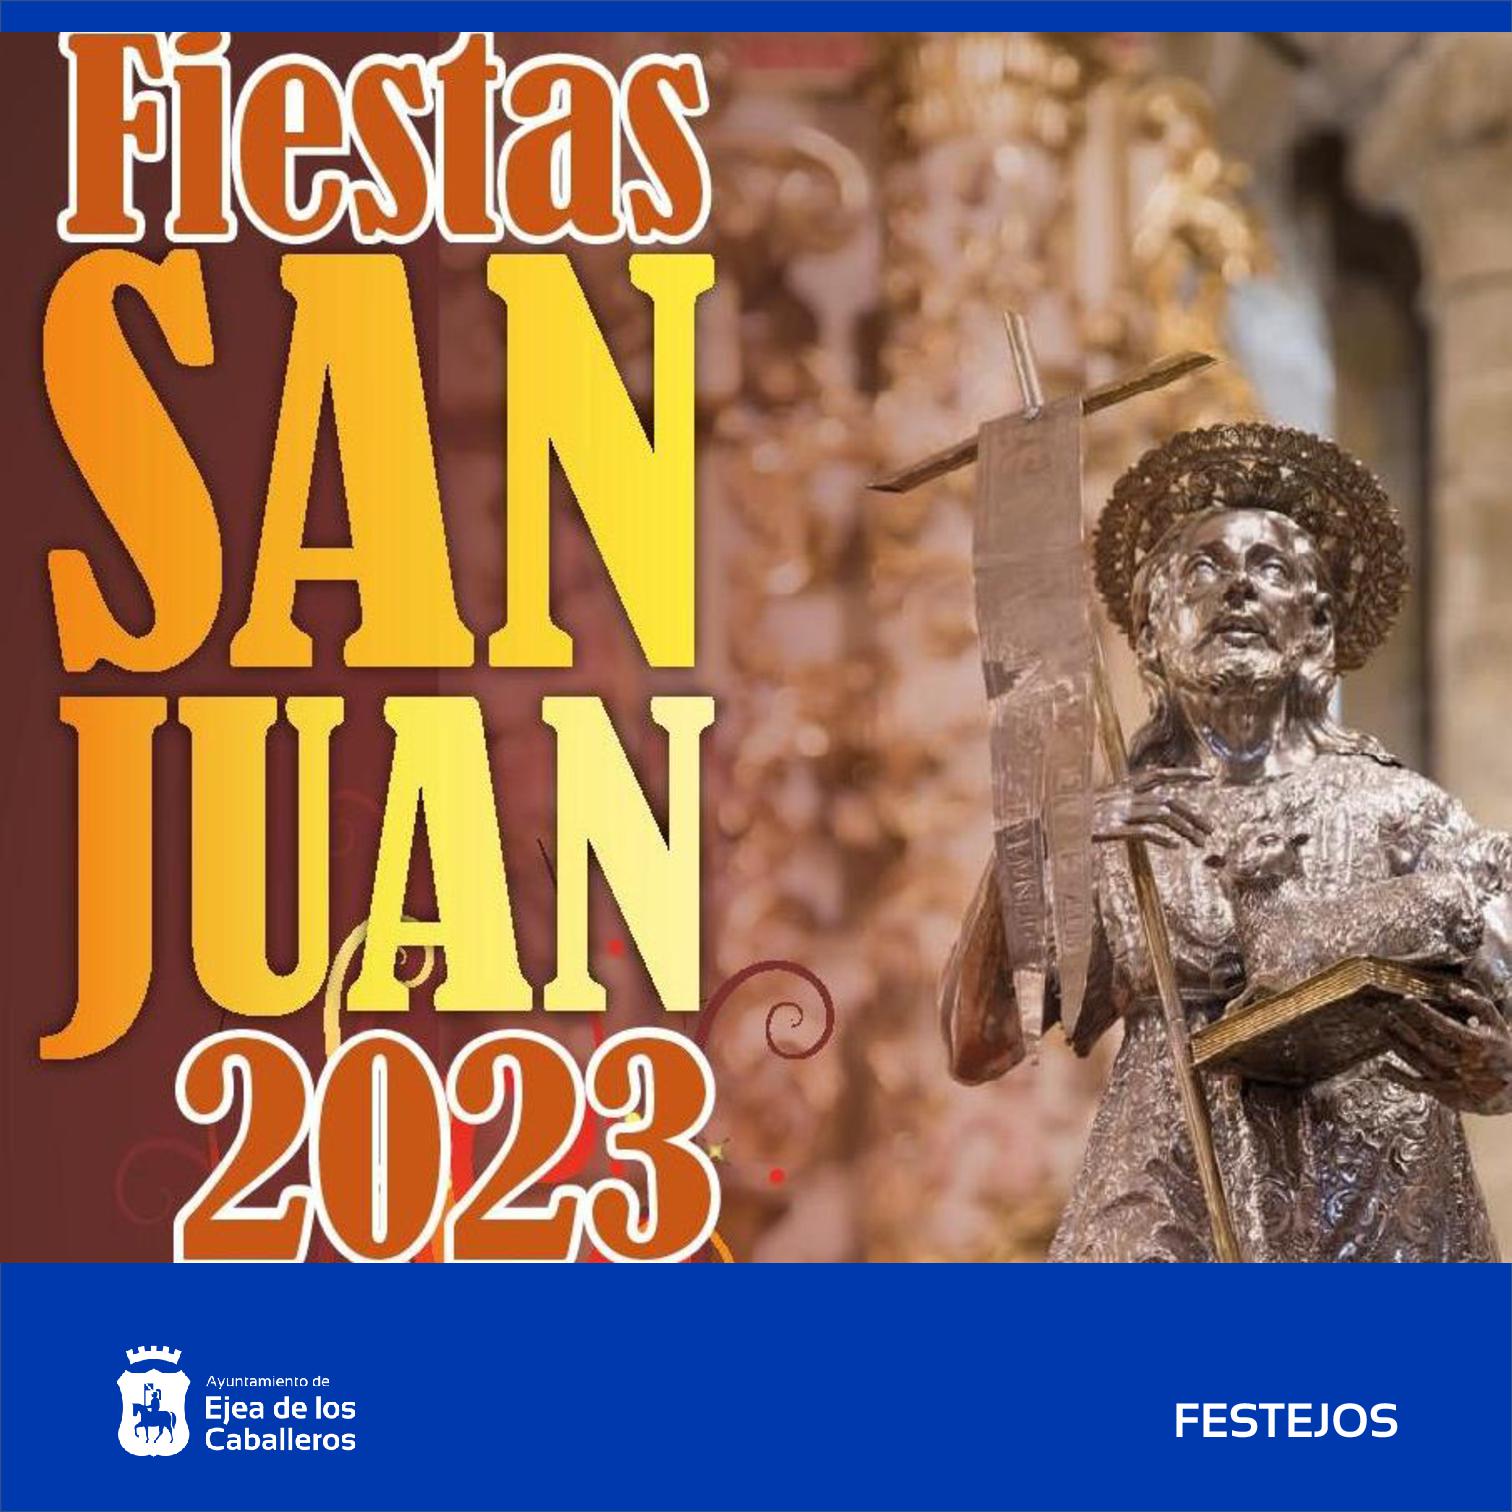 Fiestas de San Juan 2023 en Ejea Tradición y eventos clásicos unidos